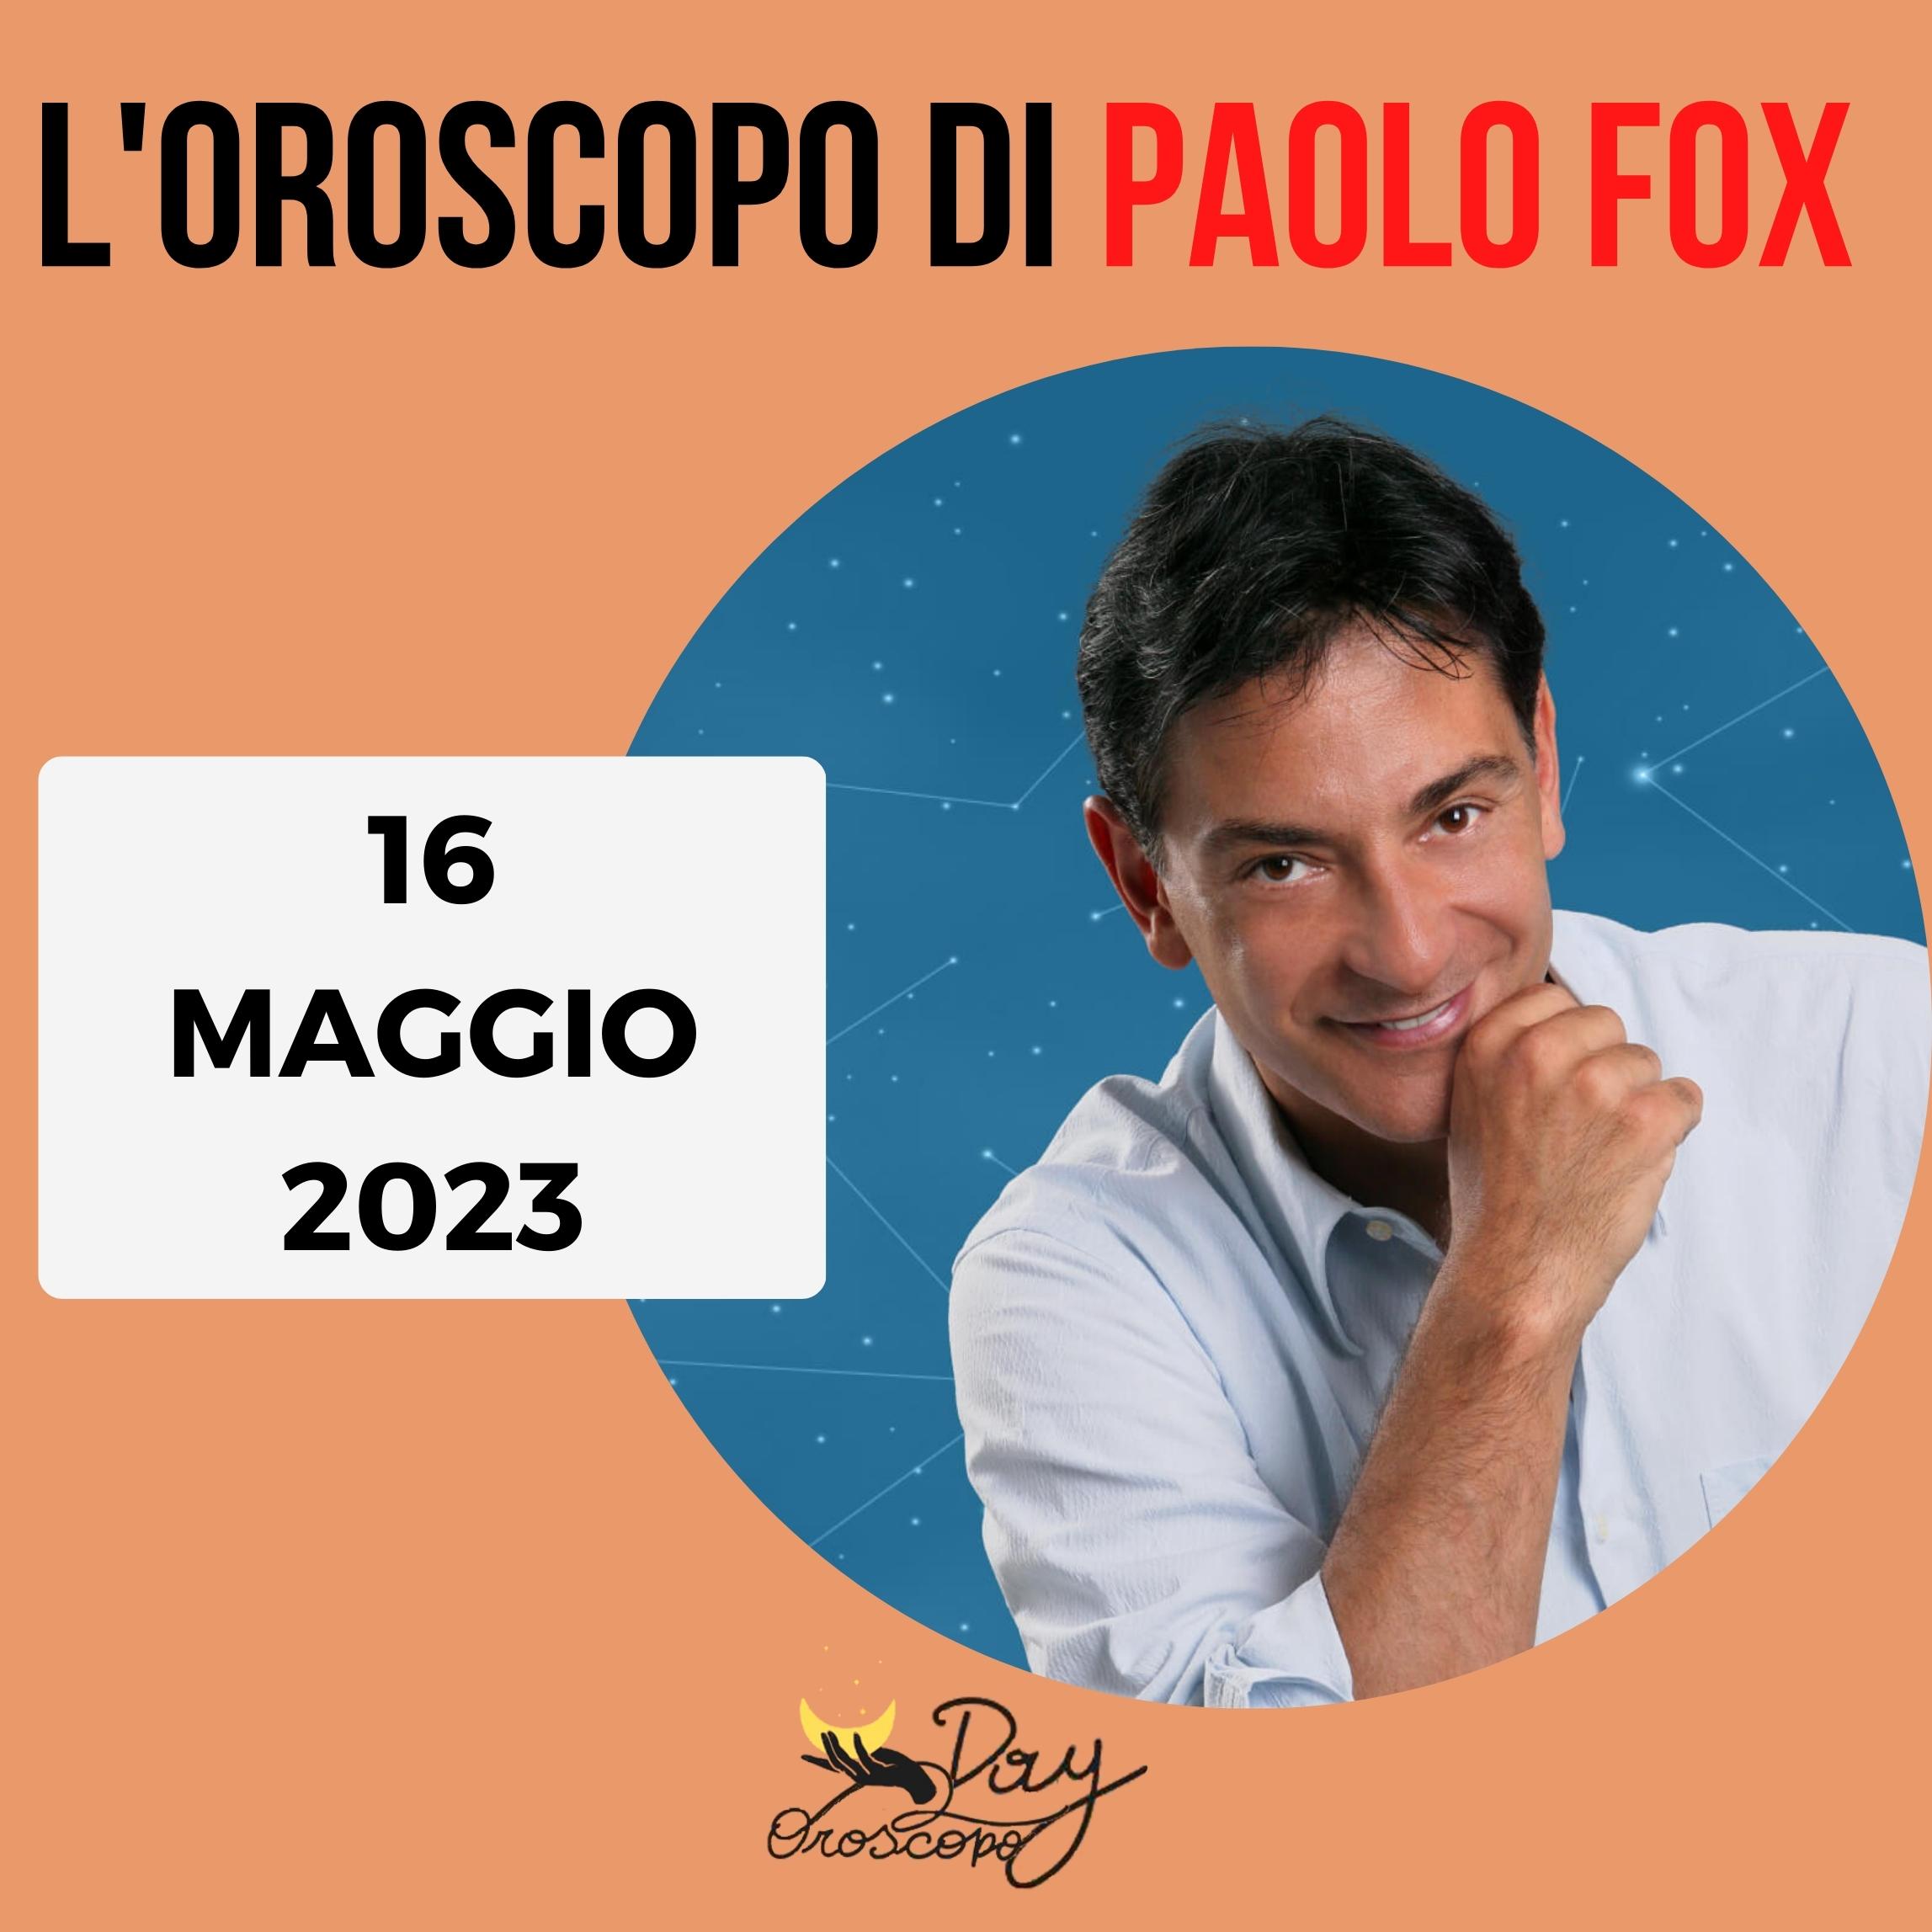 Oroscopo oggi domani Paolo Fox 16 maggio 2023